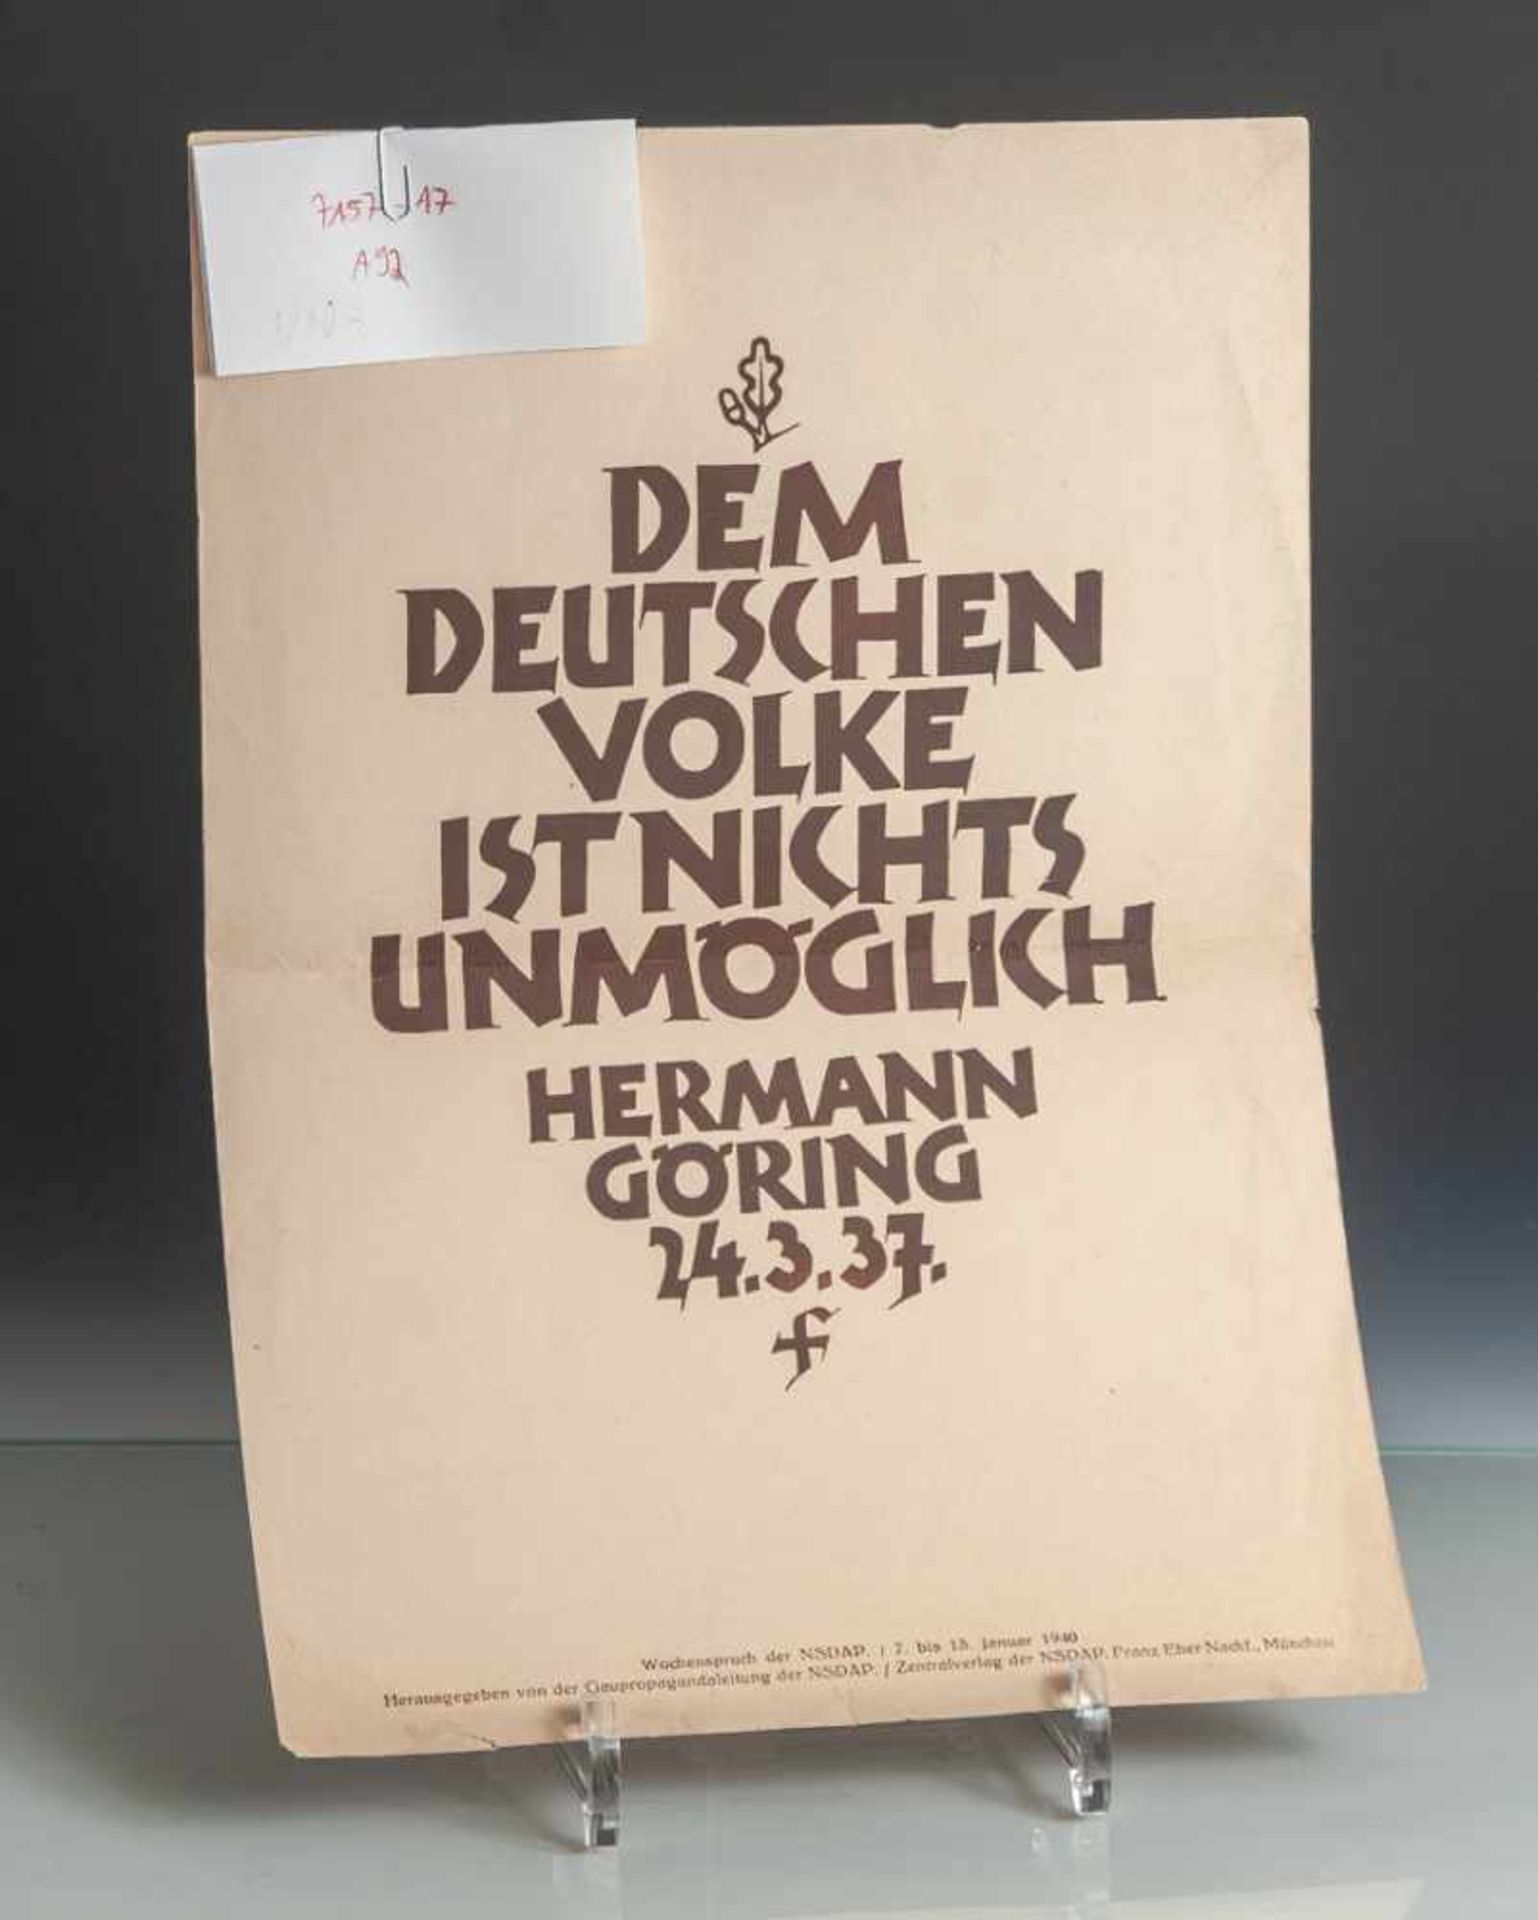 Propagandablatt/Wochenspruch der NSDAP "Dem Deutschen Volke ist nichts unmöglich HermannGöring 24.